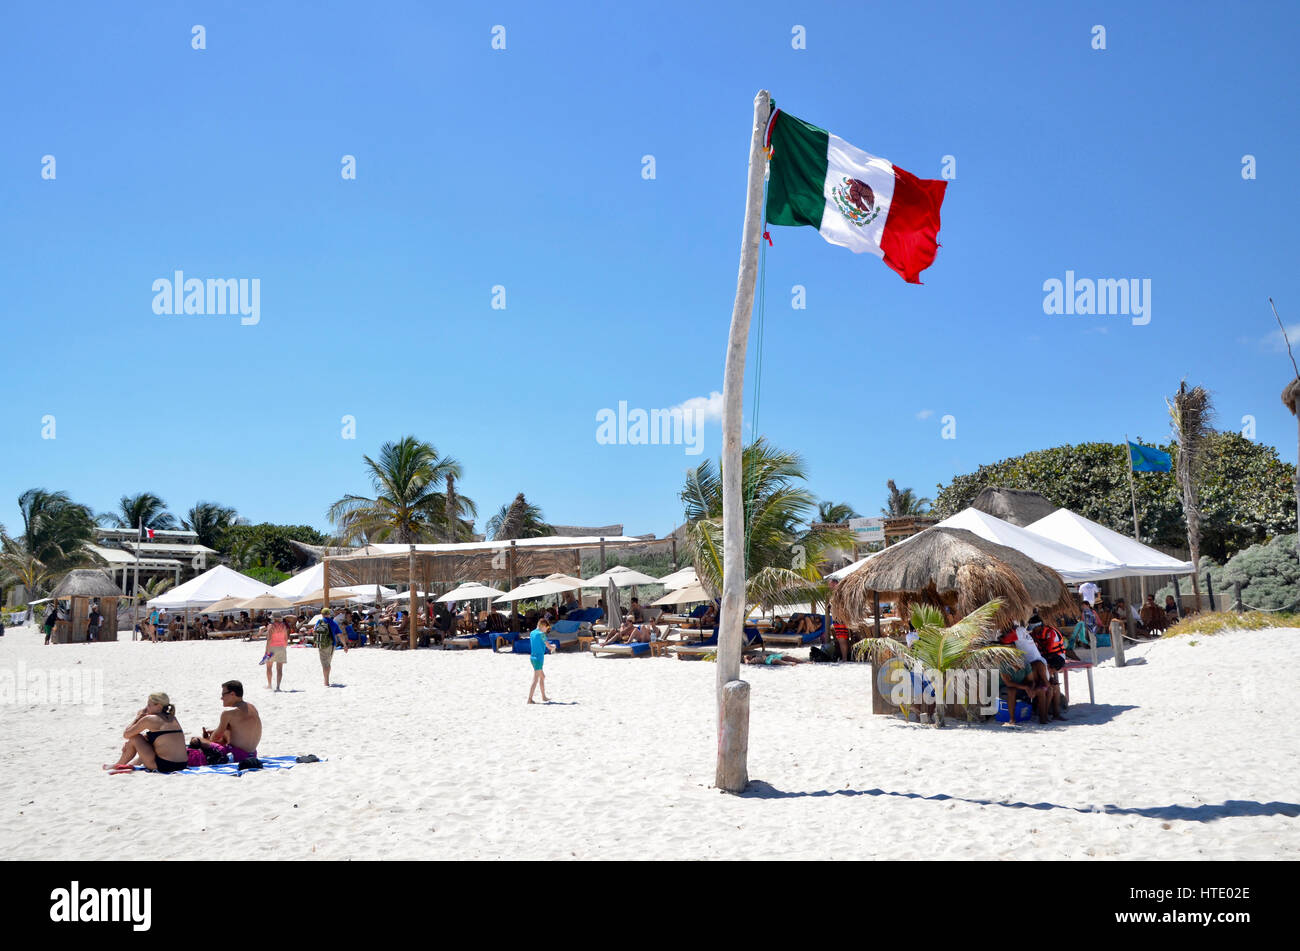 Les touristes sur la plage de Tulum mexique avec drapeau mexicain Banque D'Images